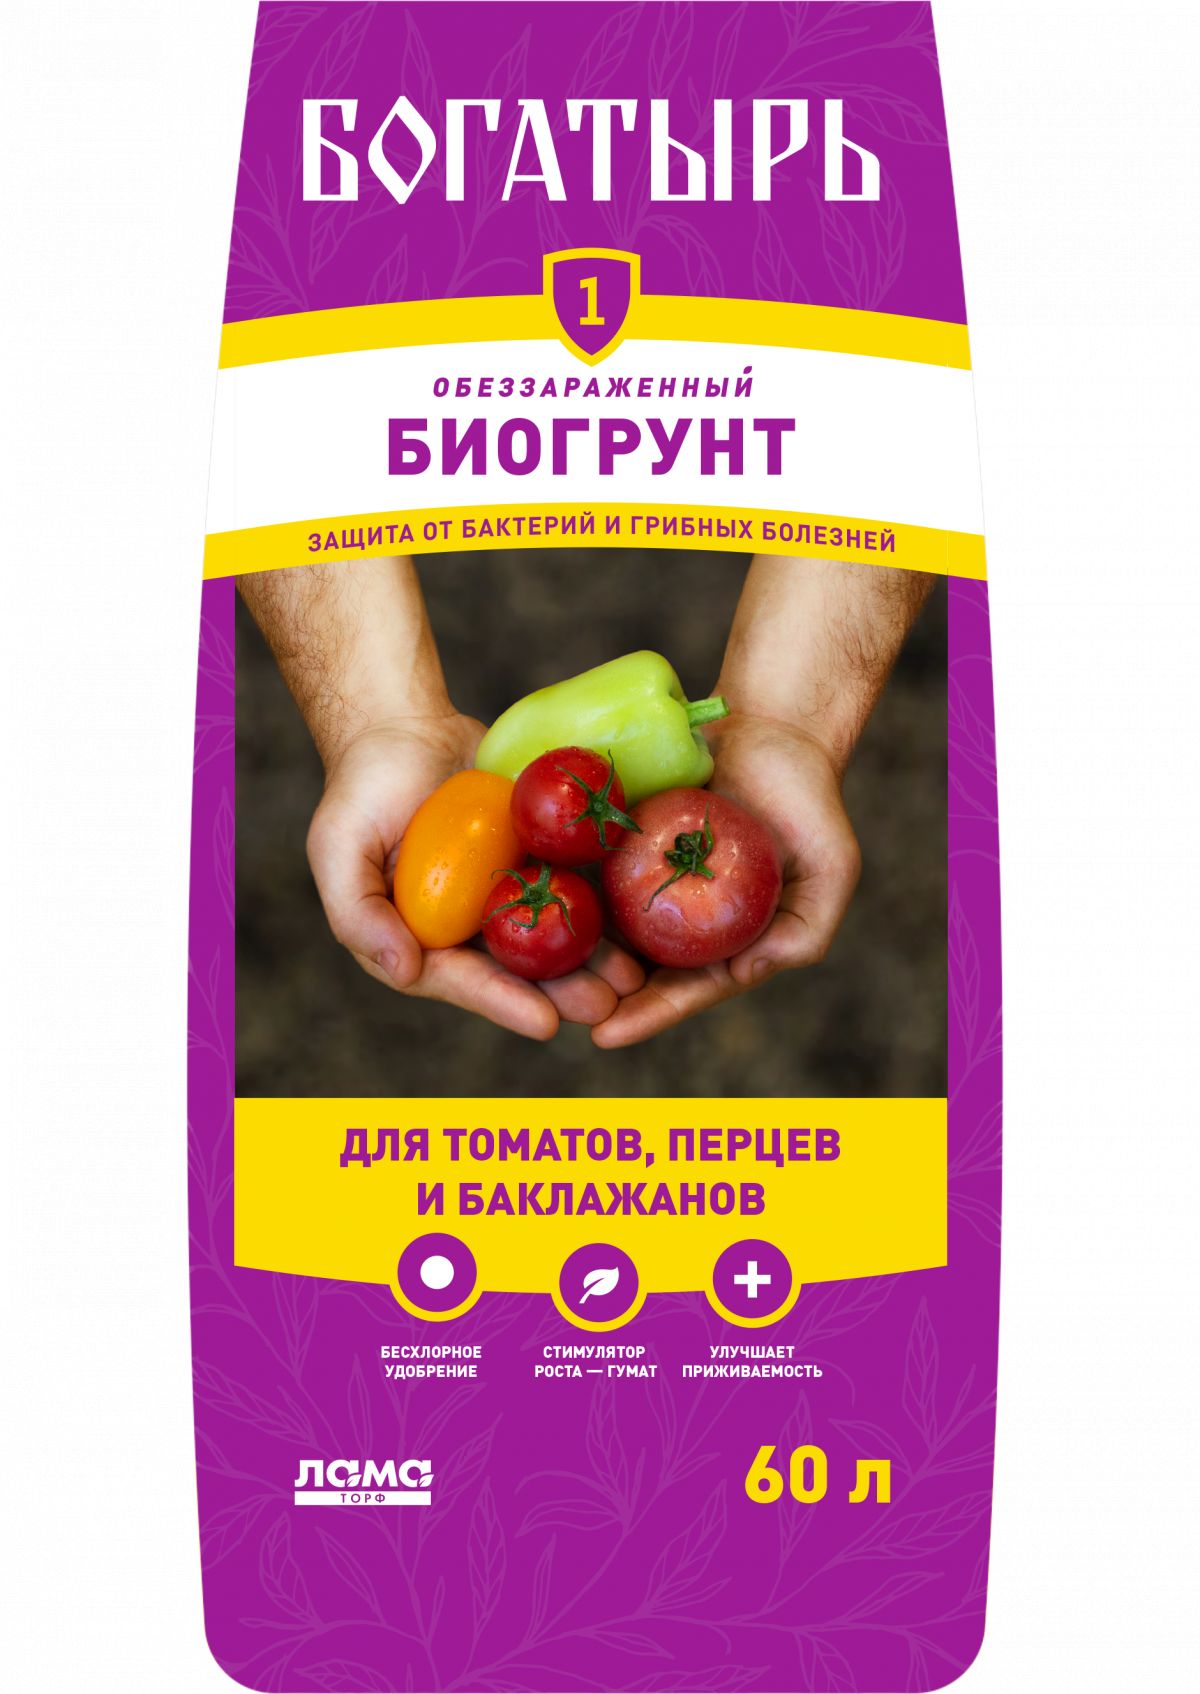 На сайте компании «Лама Торф» появились новинки биогрунта: универсальный, для плодовых культур, а также для томатов, перцев и баклажанов